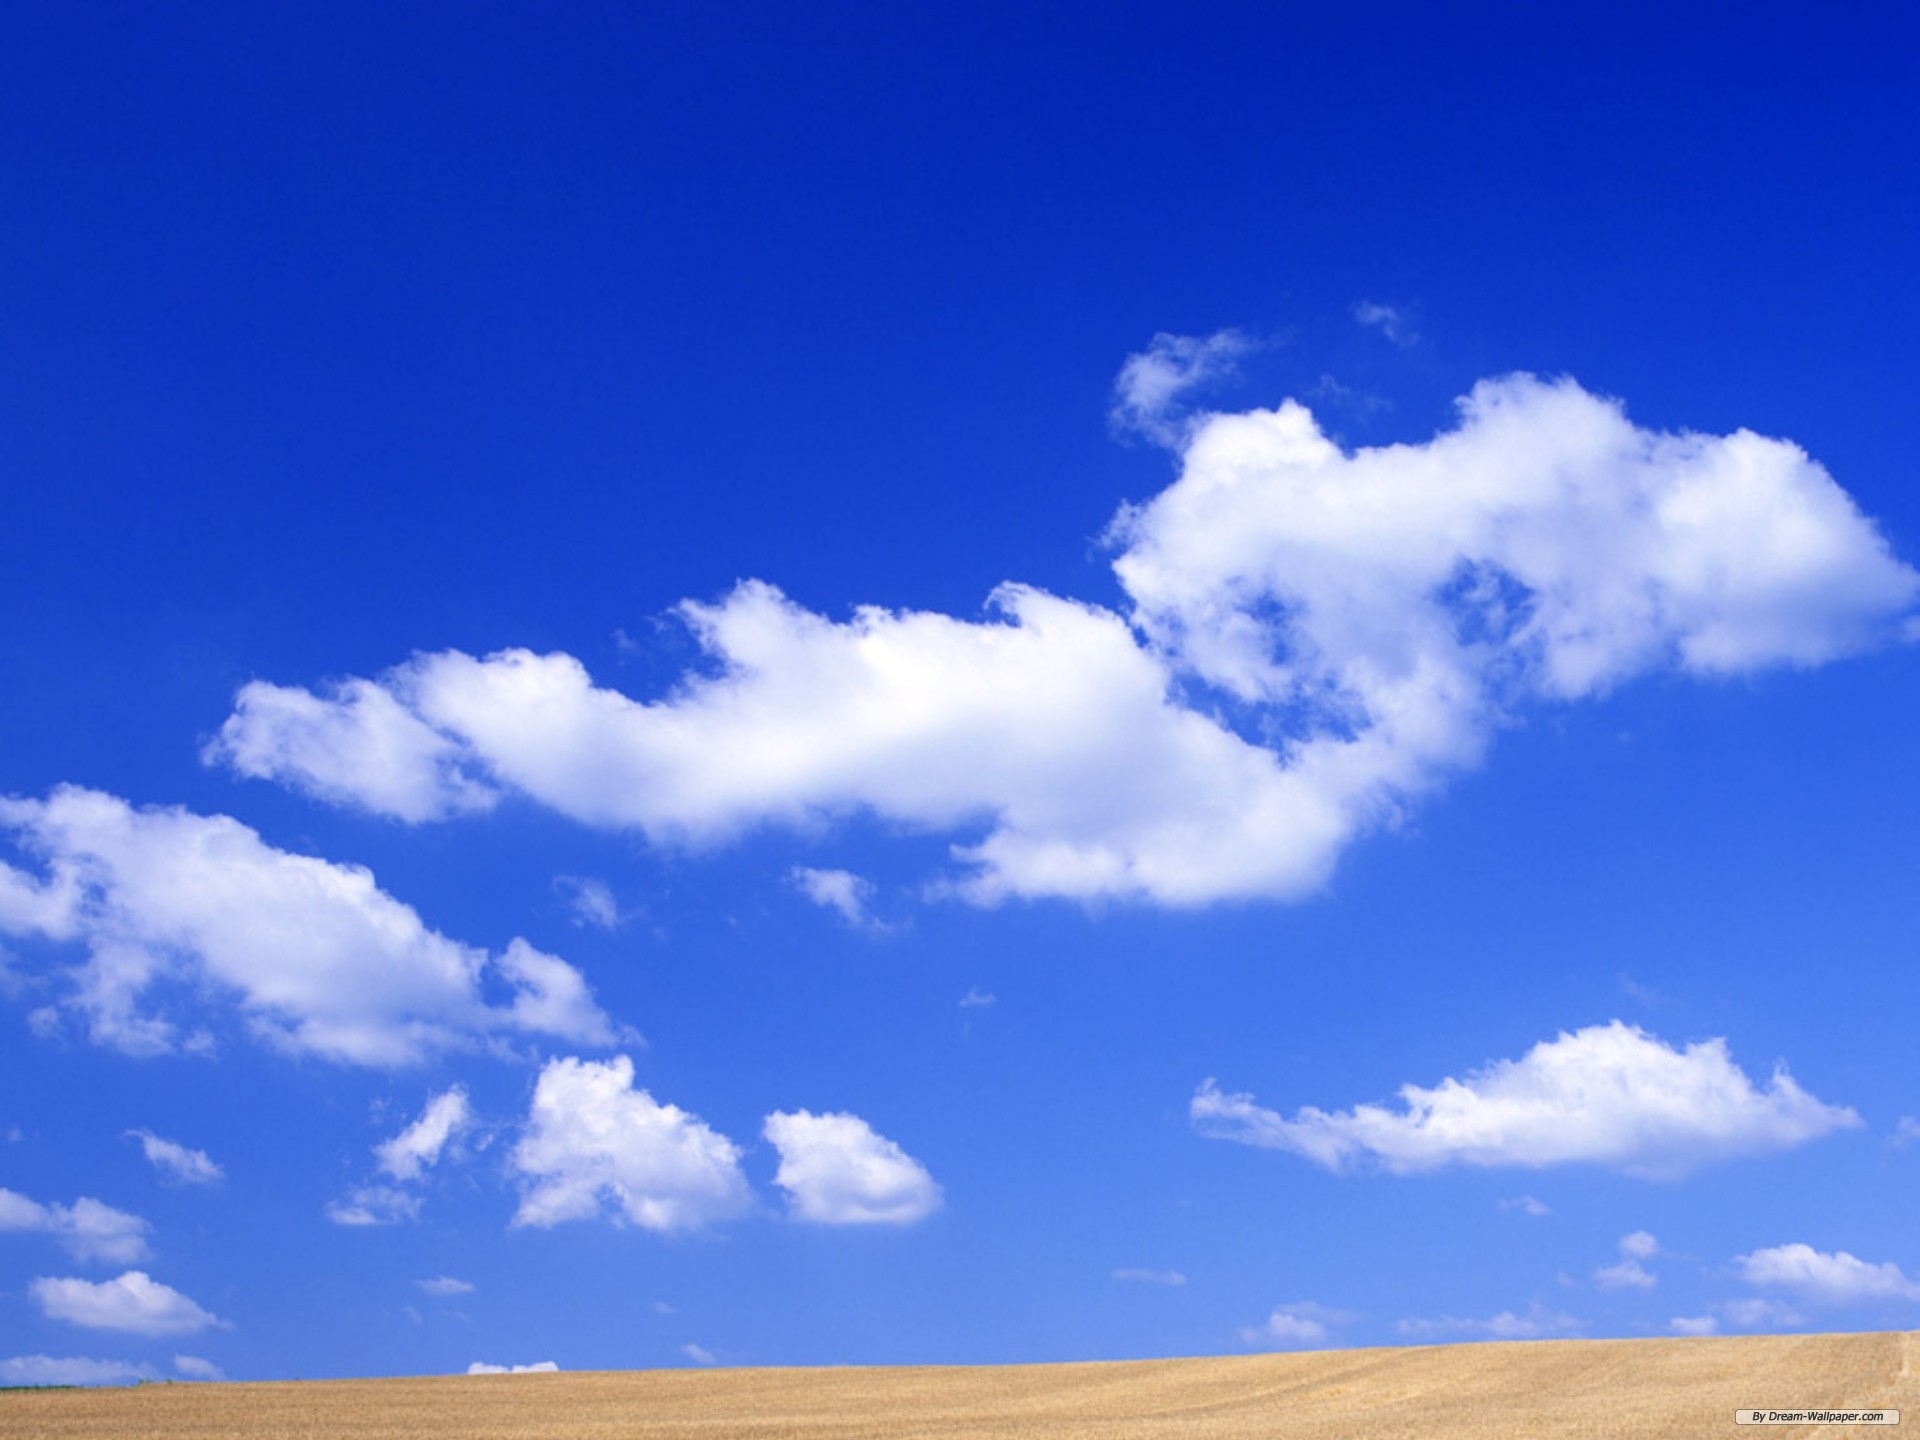 雲空の壁紙,空,雲,昼間,青い,積雲